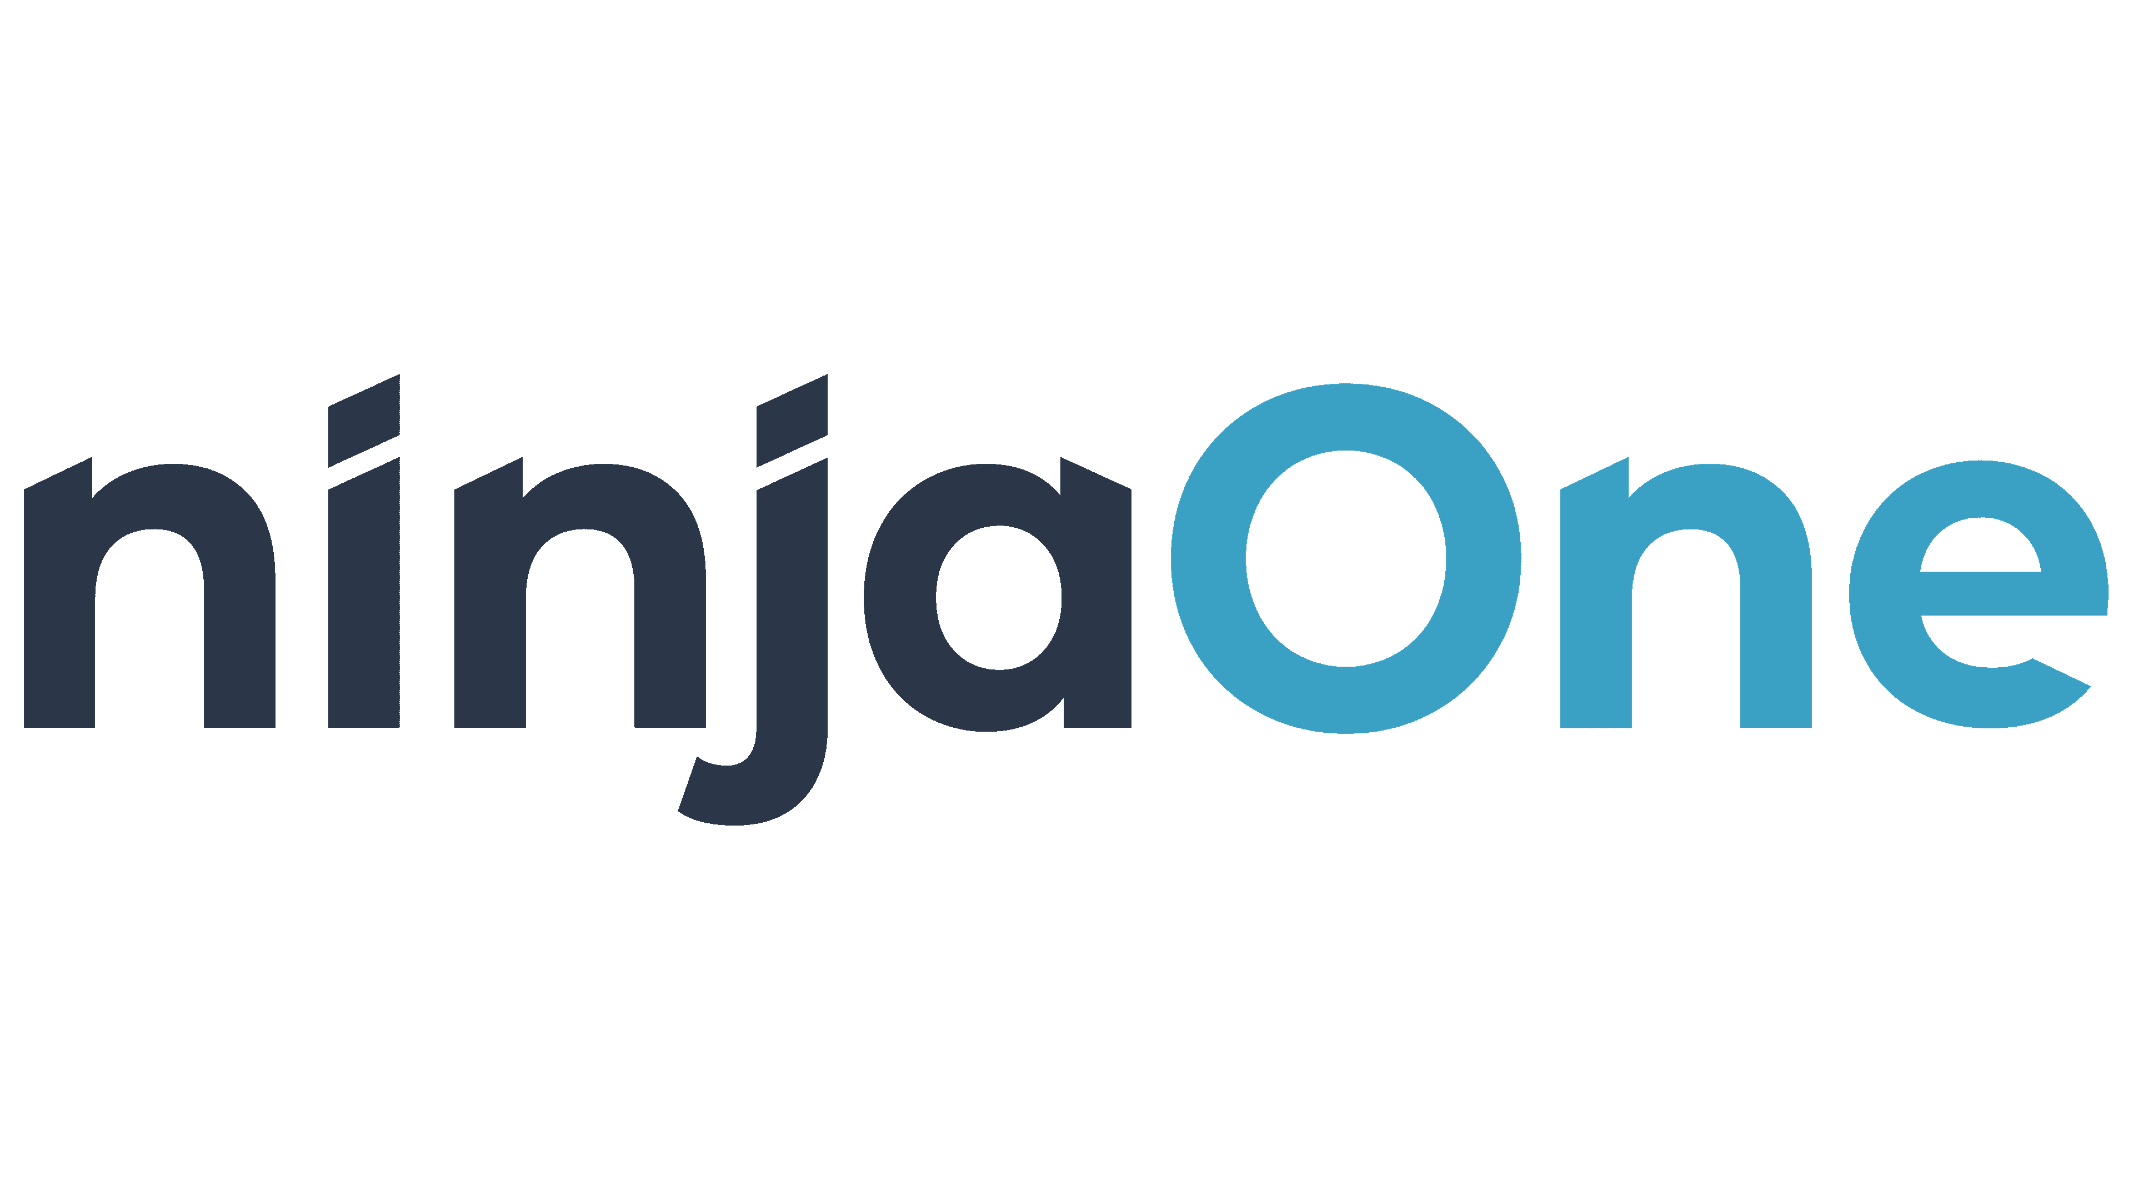 Ninjaone logo